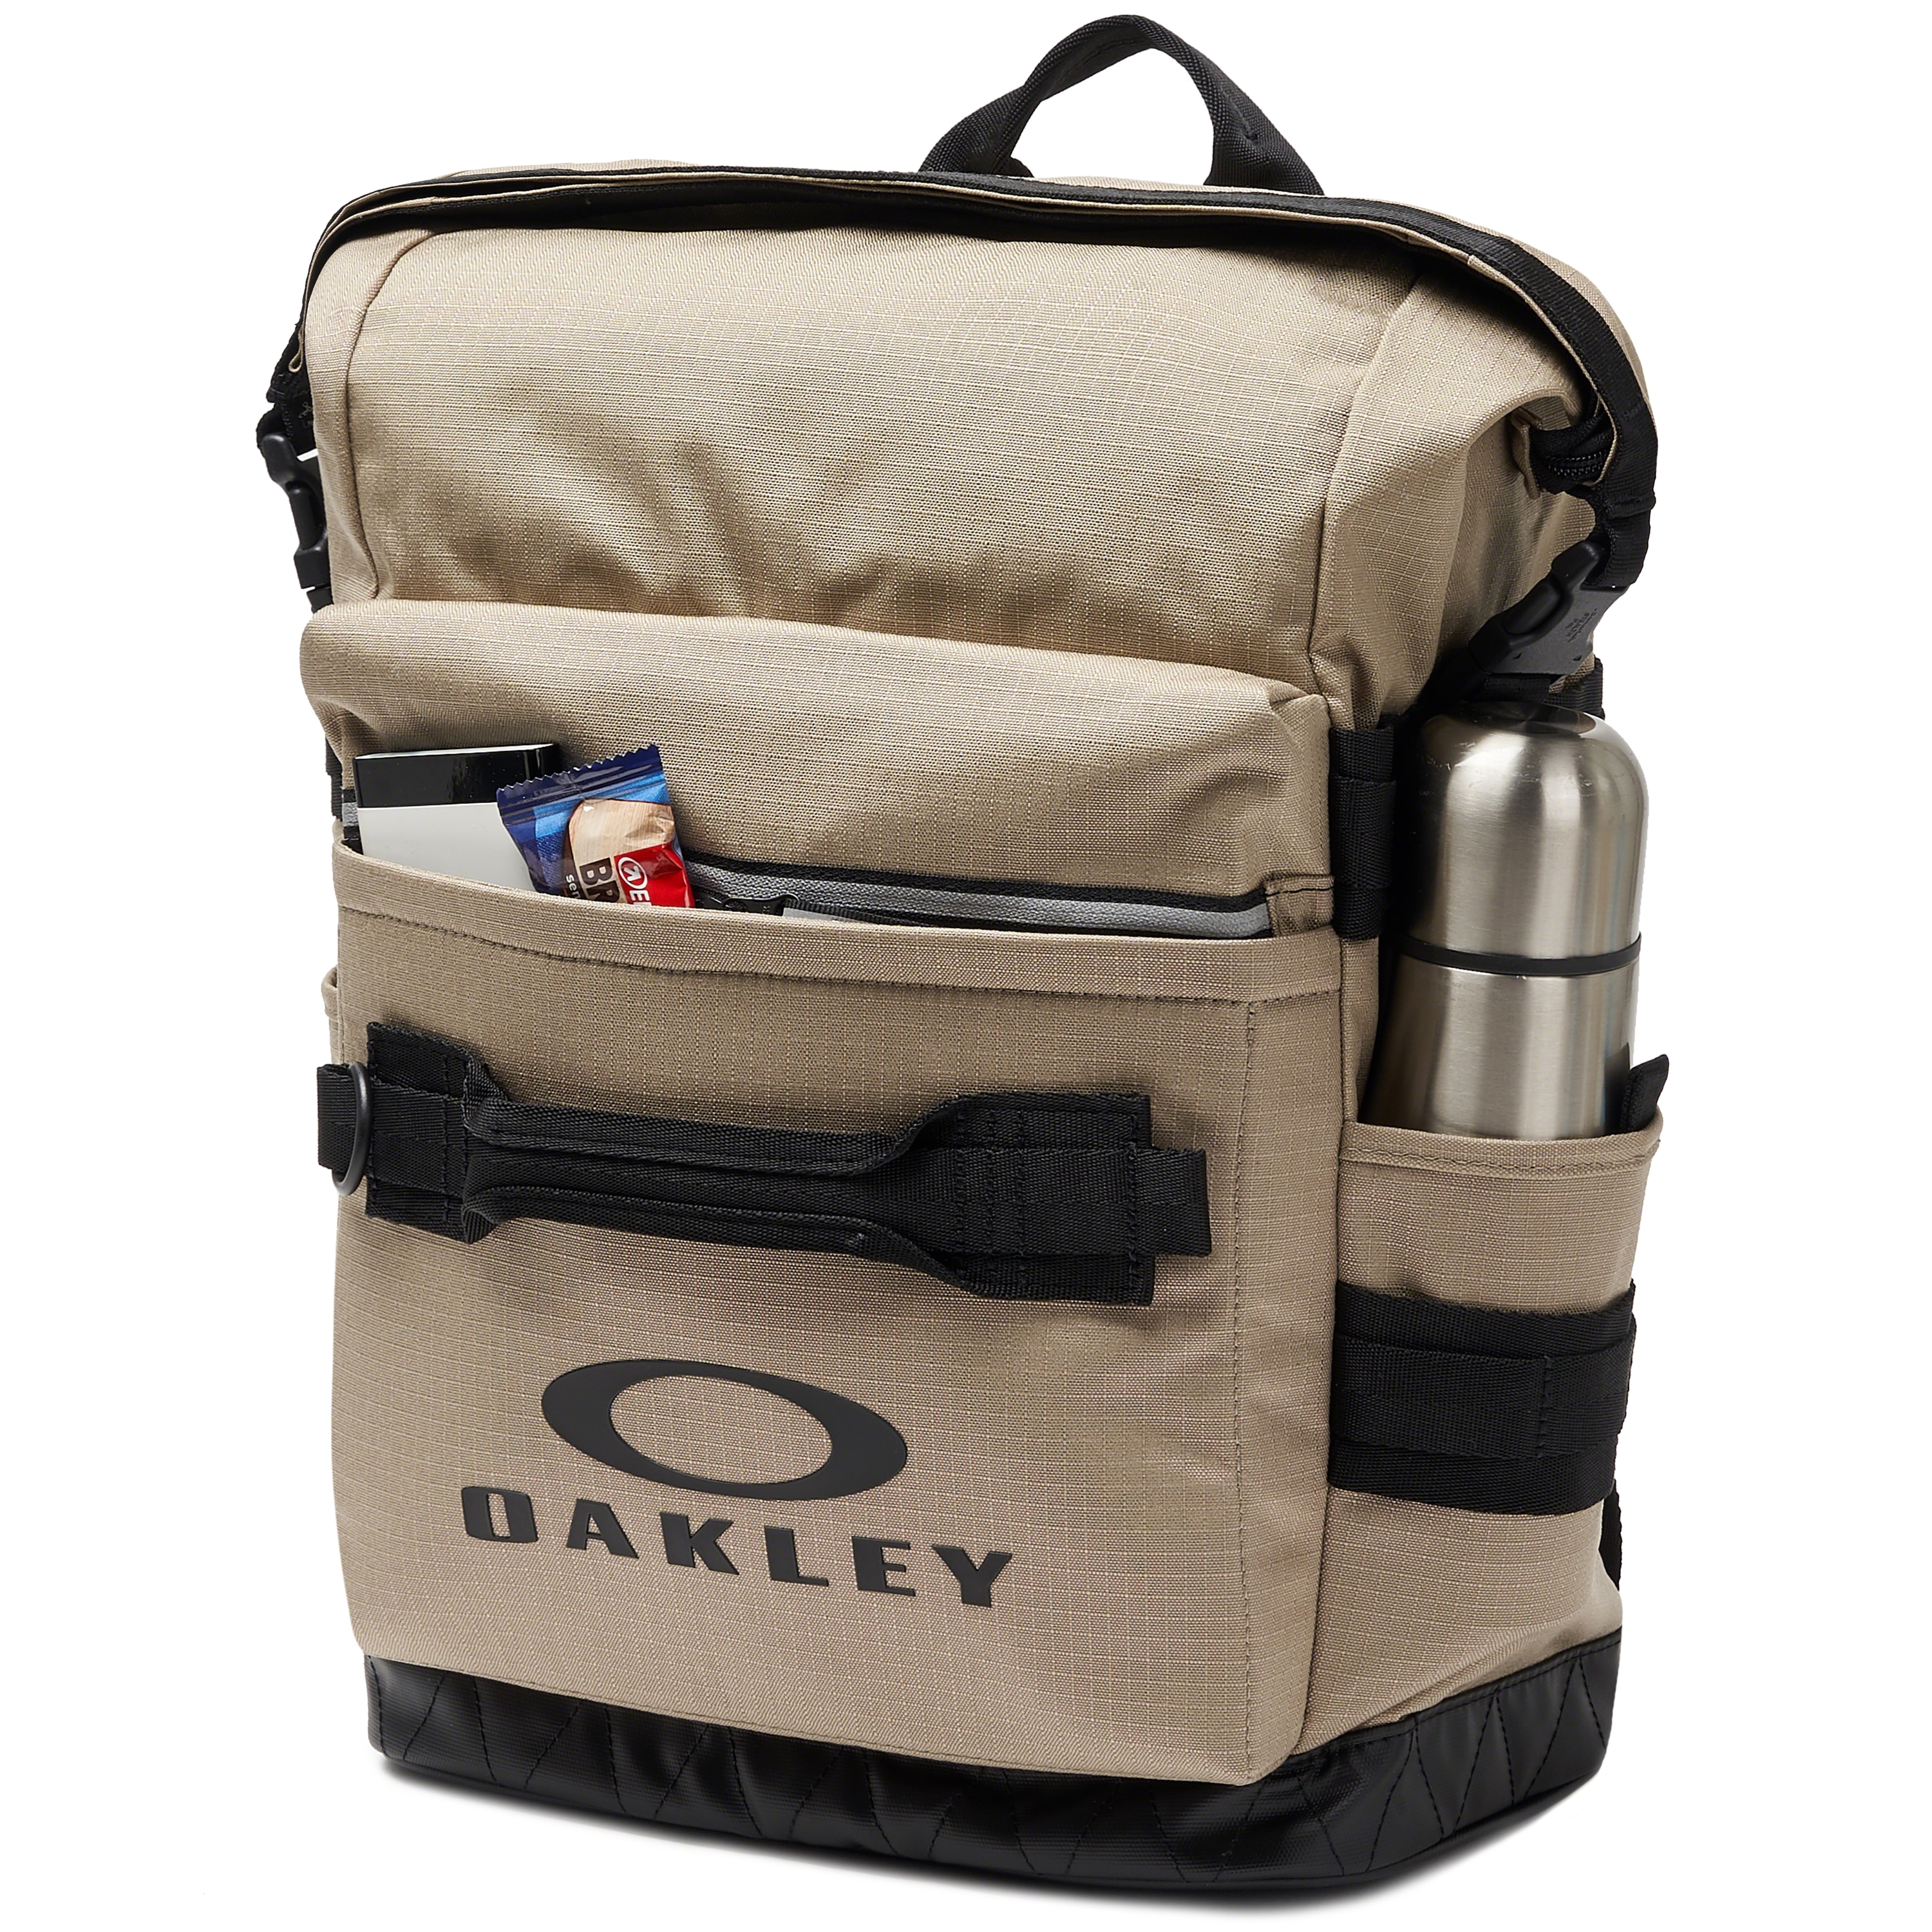 Oakley Utility Folded Backpack - Rye 